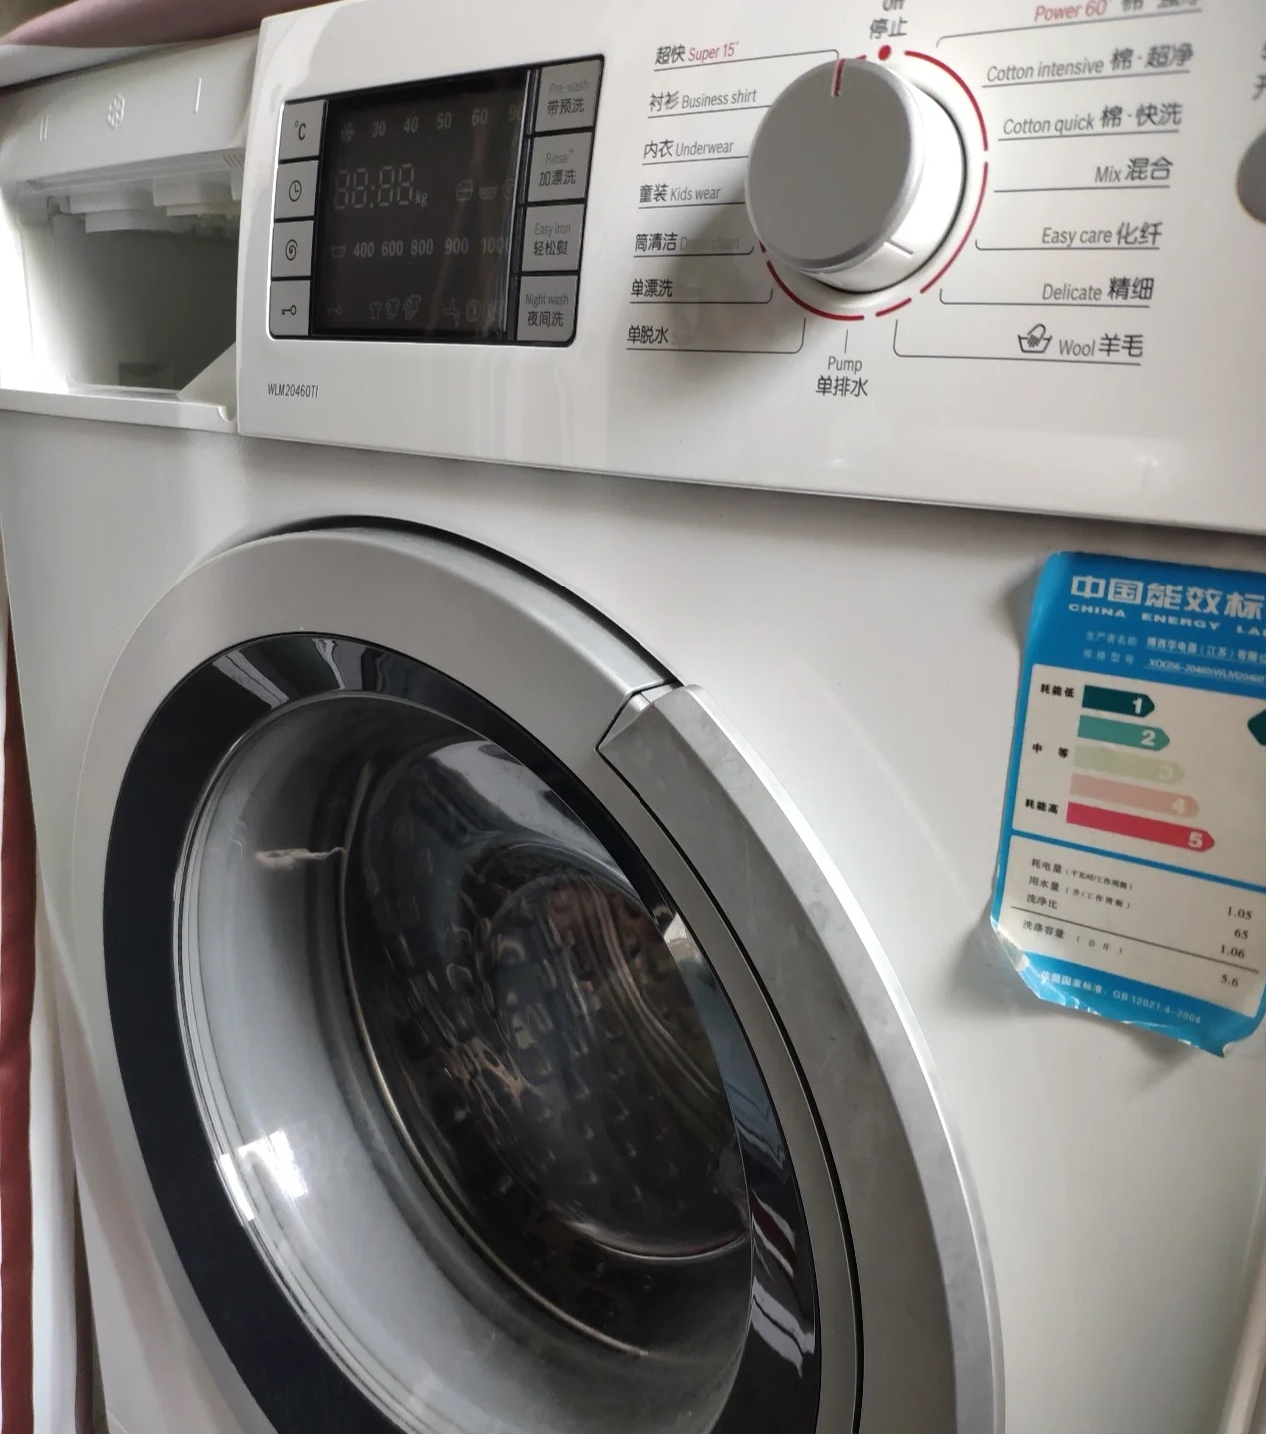 再买洗衣机，一定要坚持这“7不买”，是换了3台洗衣机的教训